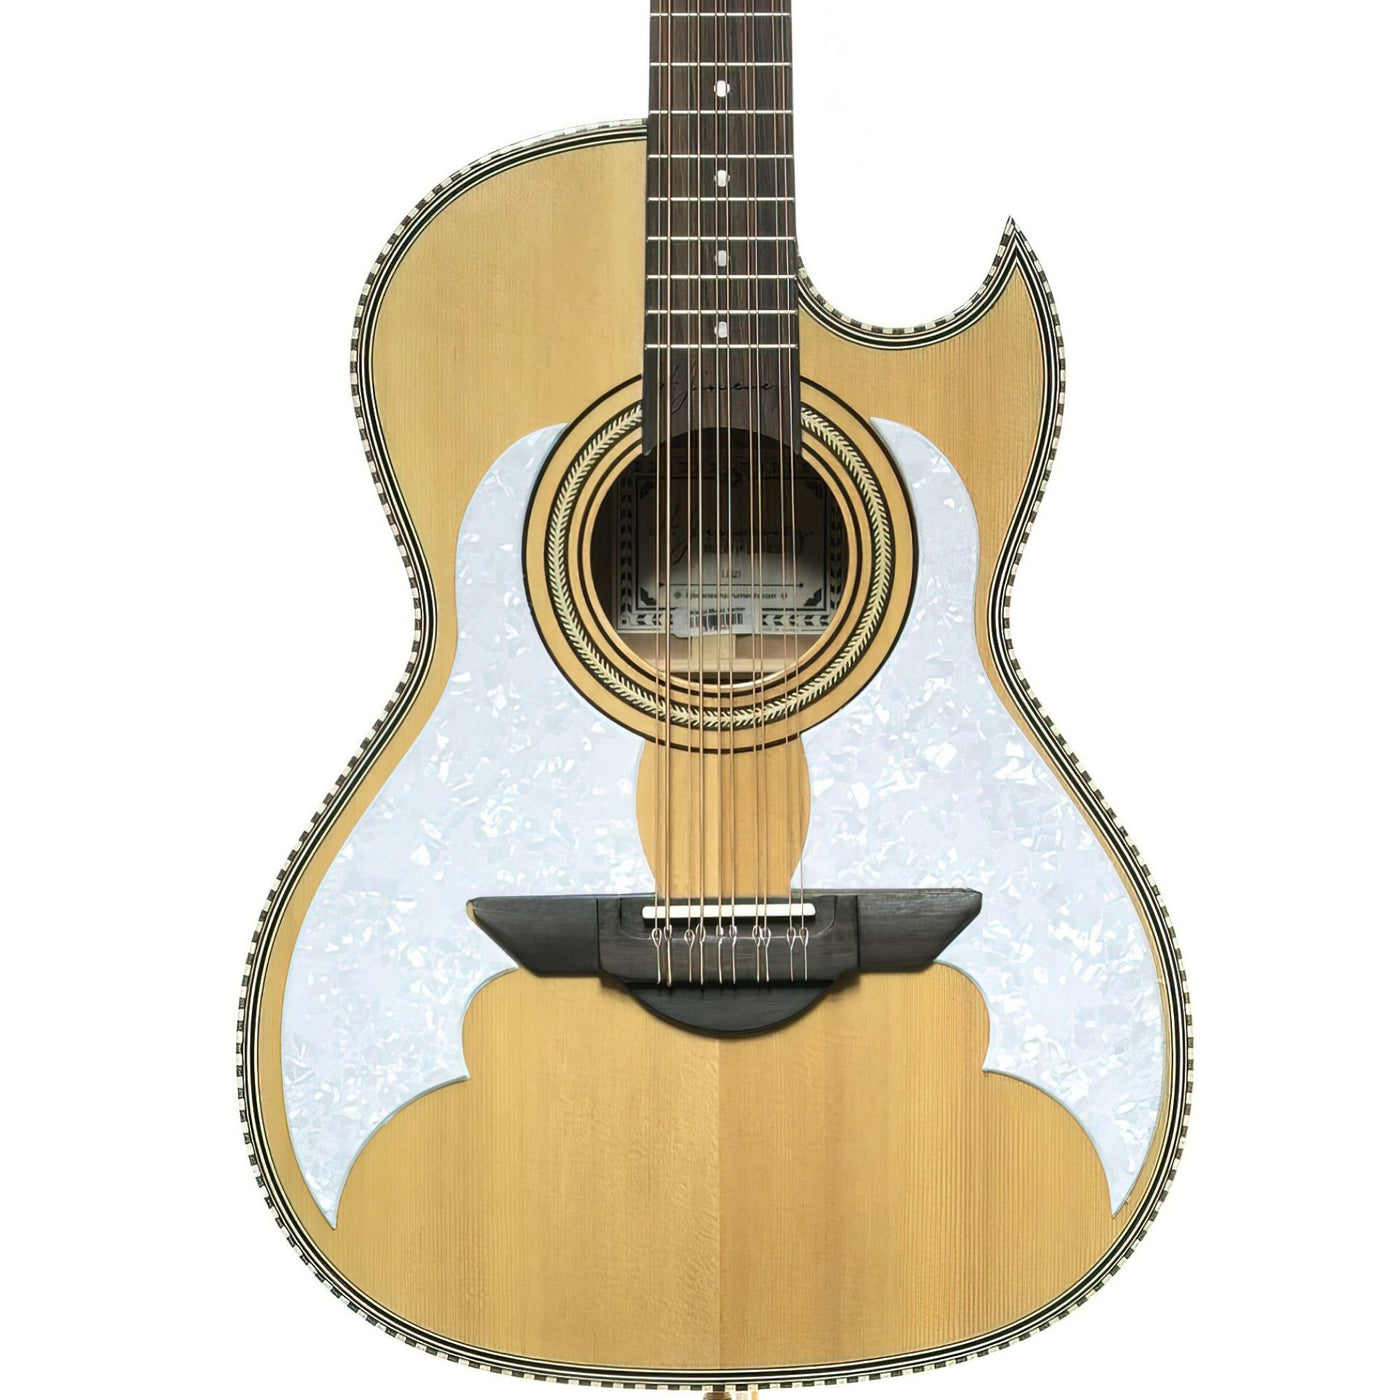 H. Jimenez LBQ3 El Murcielago (The Bat) Full Body Bajo Quinto Solid Spruce Top, Acoustic Guitar Natural